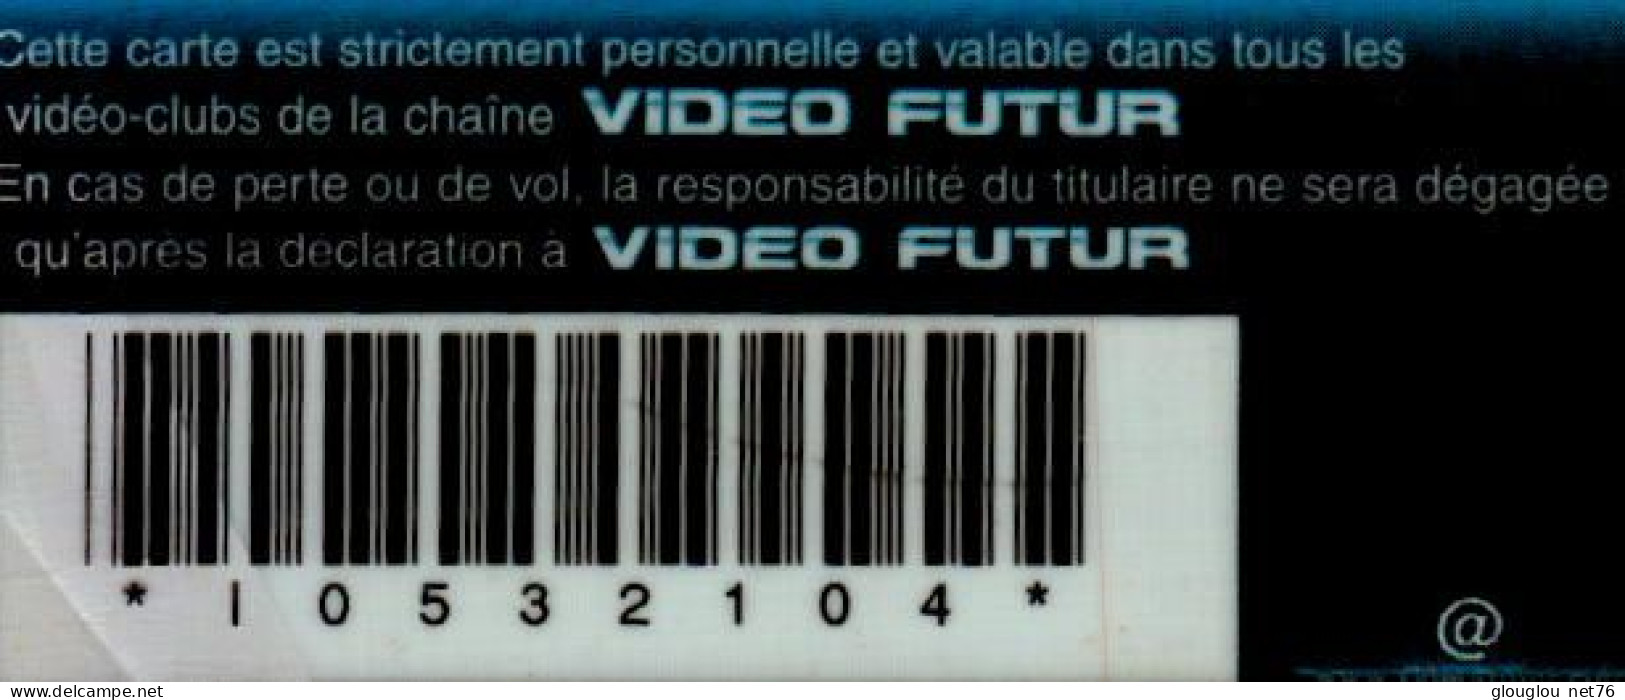 VIDEO FUTUR.. CARTE PRIVILEGE - Suscripción